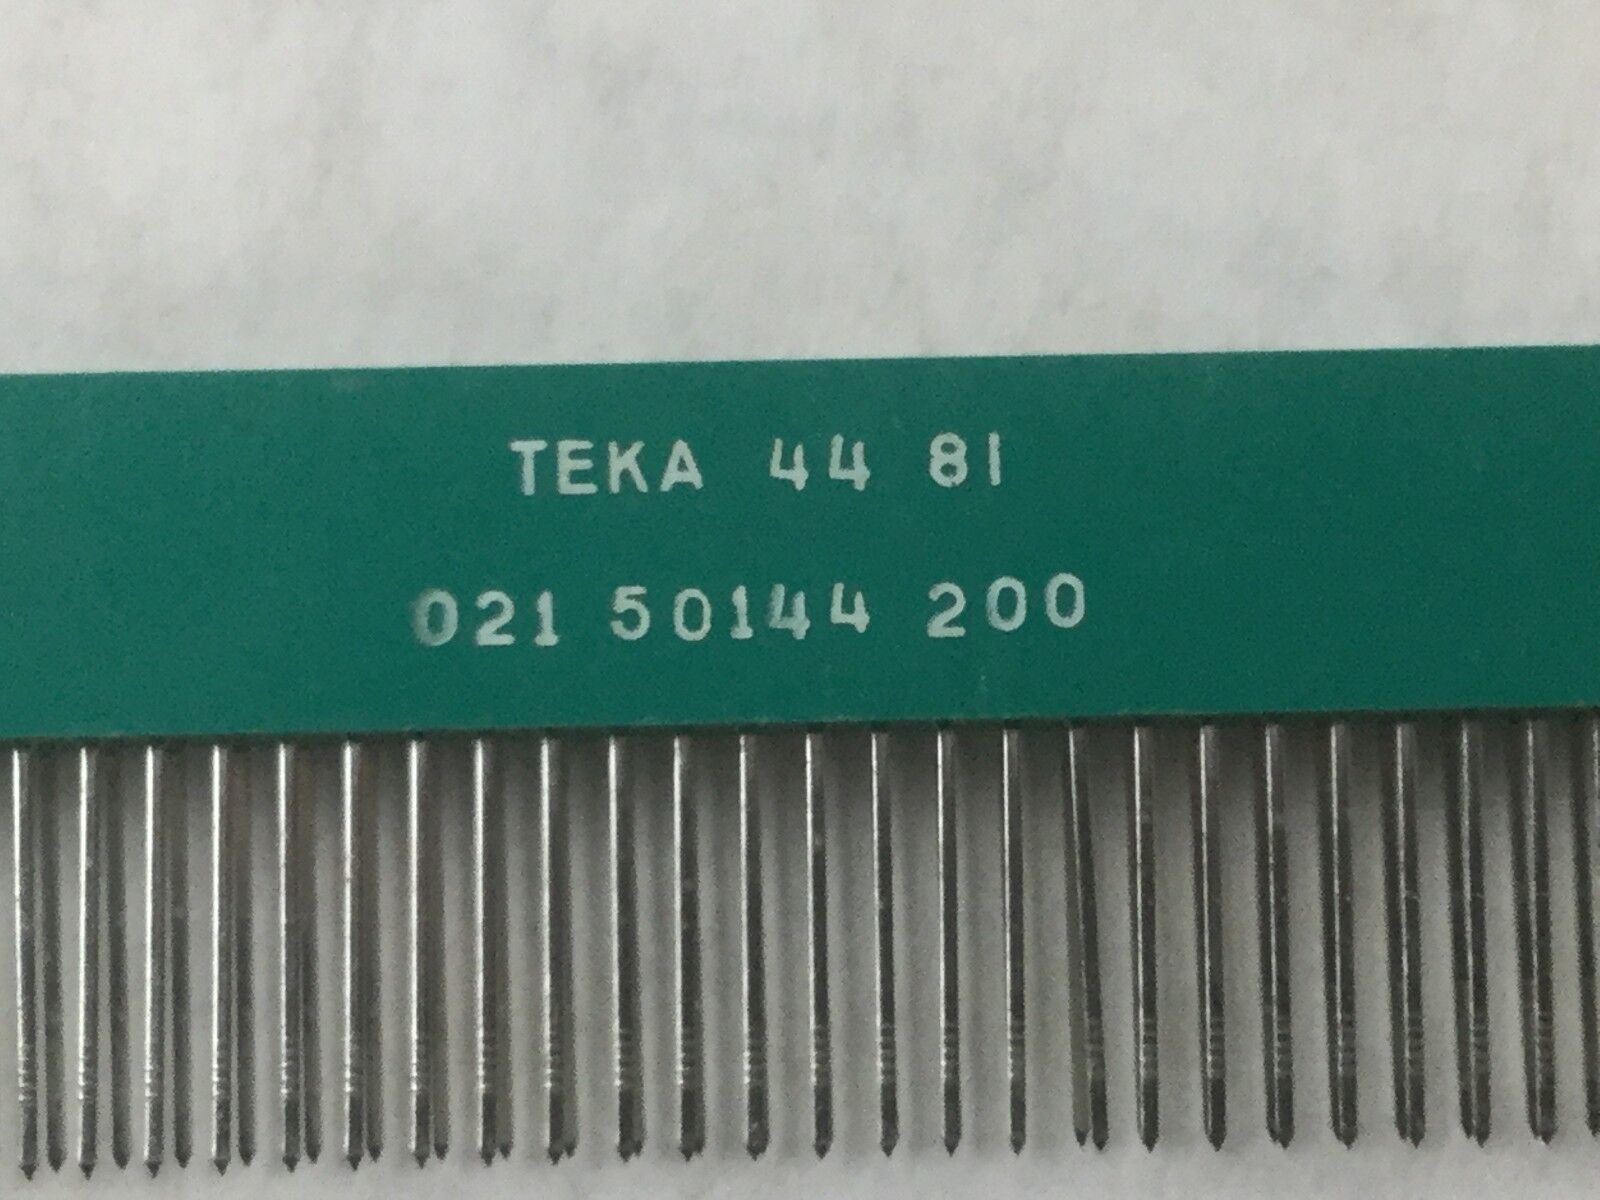 TEKA 44 81 (021 50144 200), Connectors Receptacle